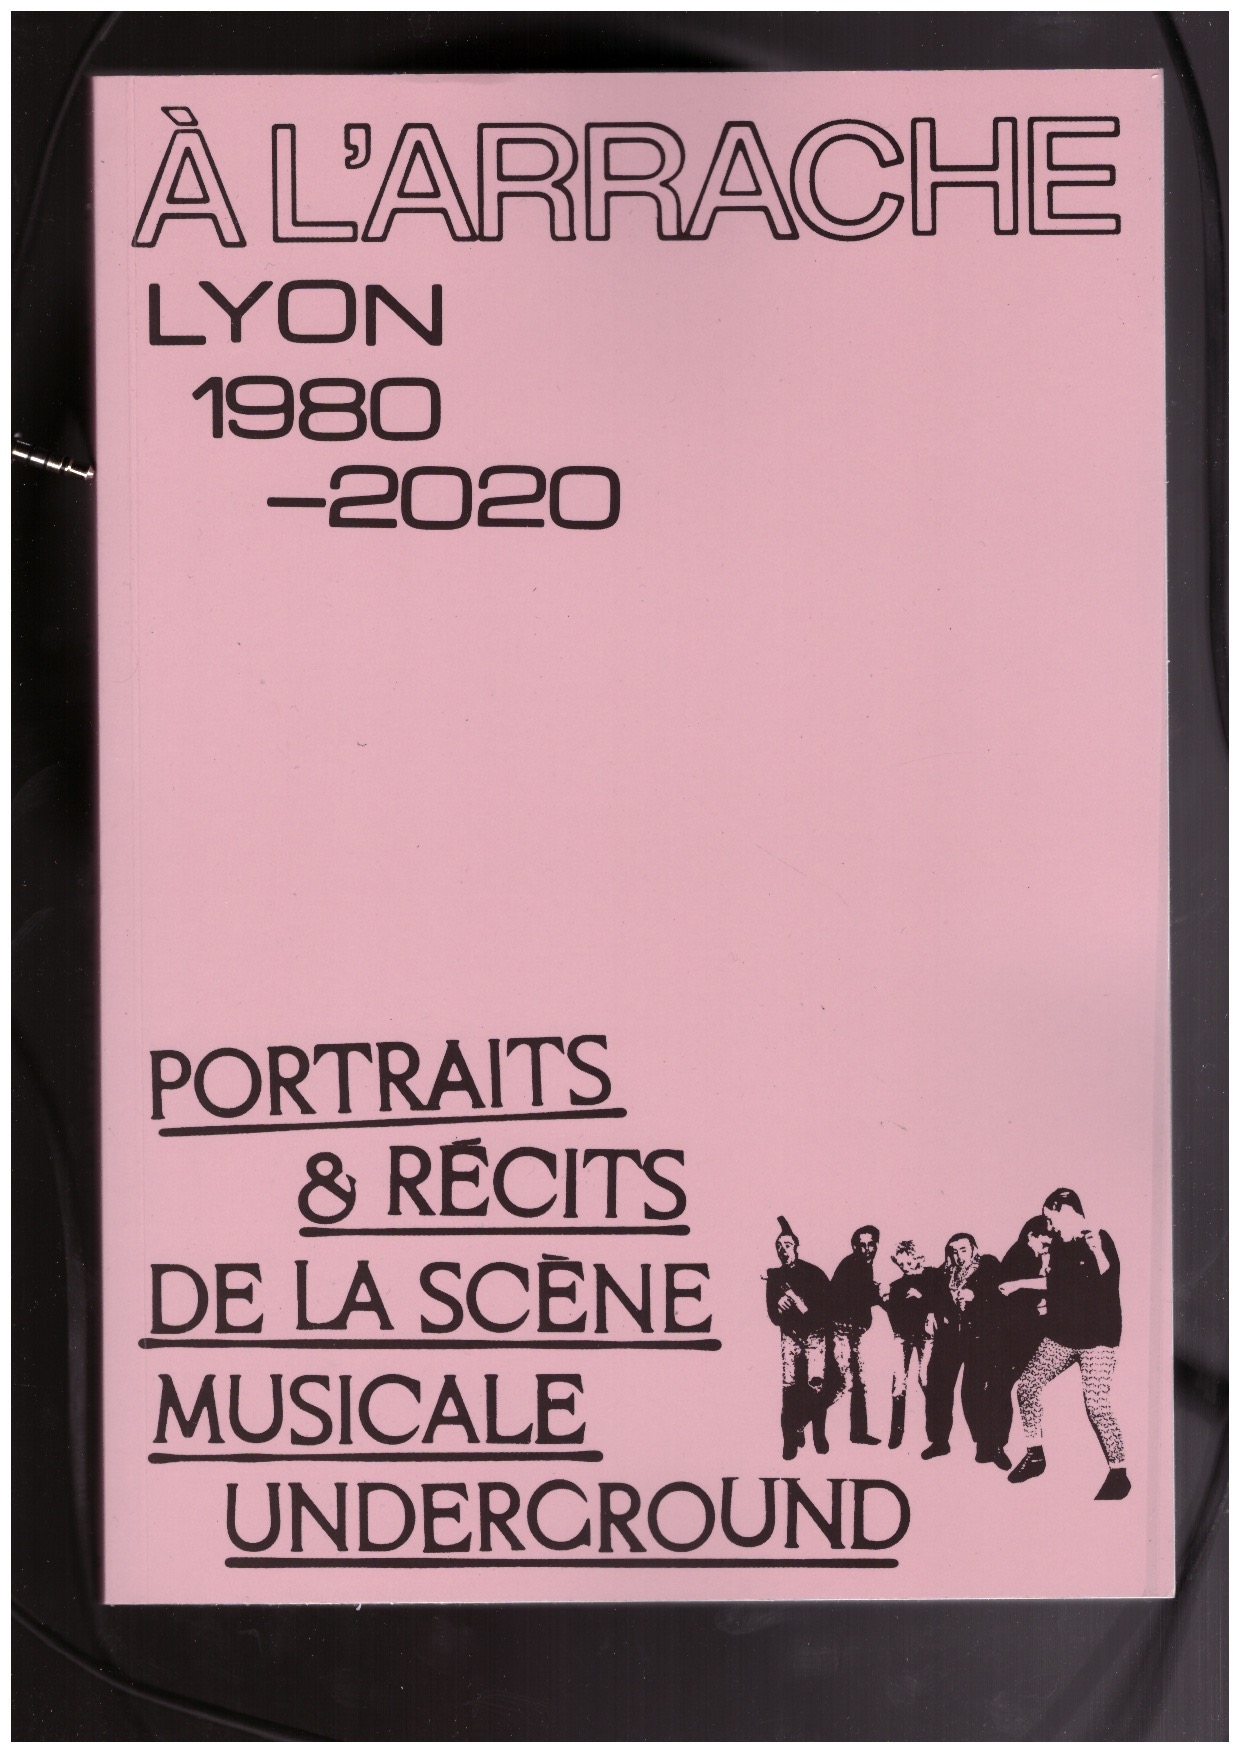 ESCANDE, Sébastien (ed.) - « À L’ARRACHE » Portraits & récits de la scène musicale underground de Lyon, 1980—2020